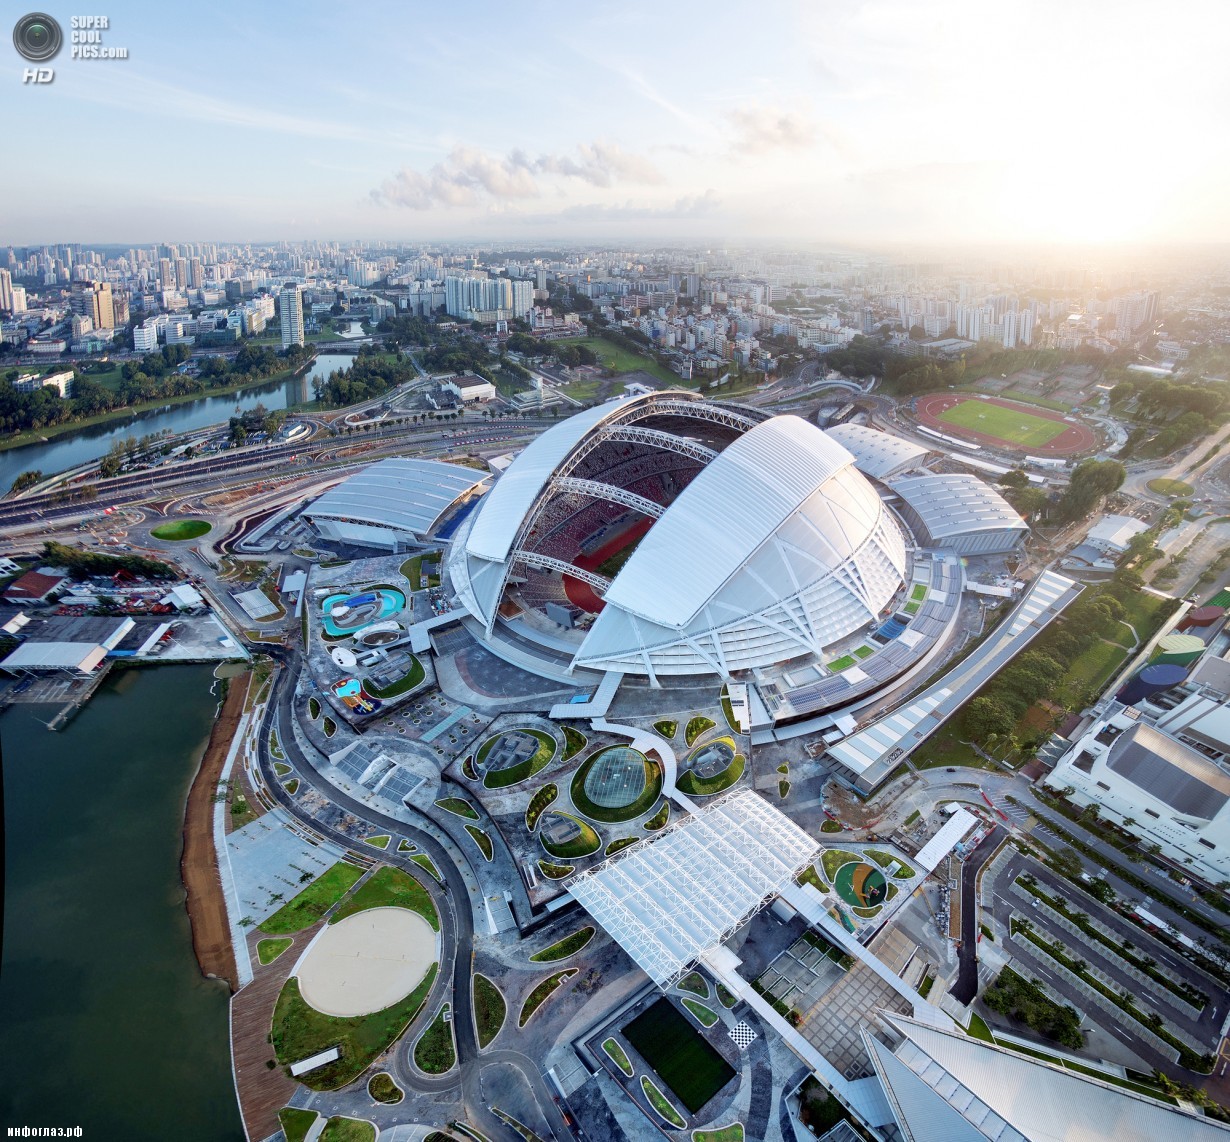 Сингапур. Спортивный комплекс Singapore Sports Hub, спроектированный DP Architects. (DP Architects)